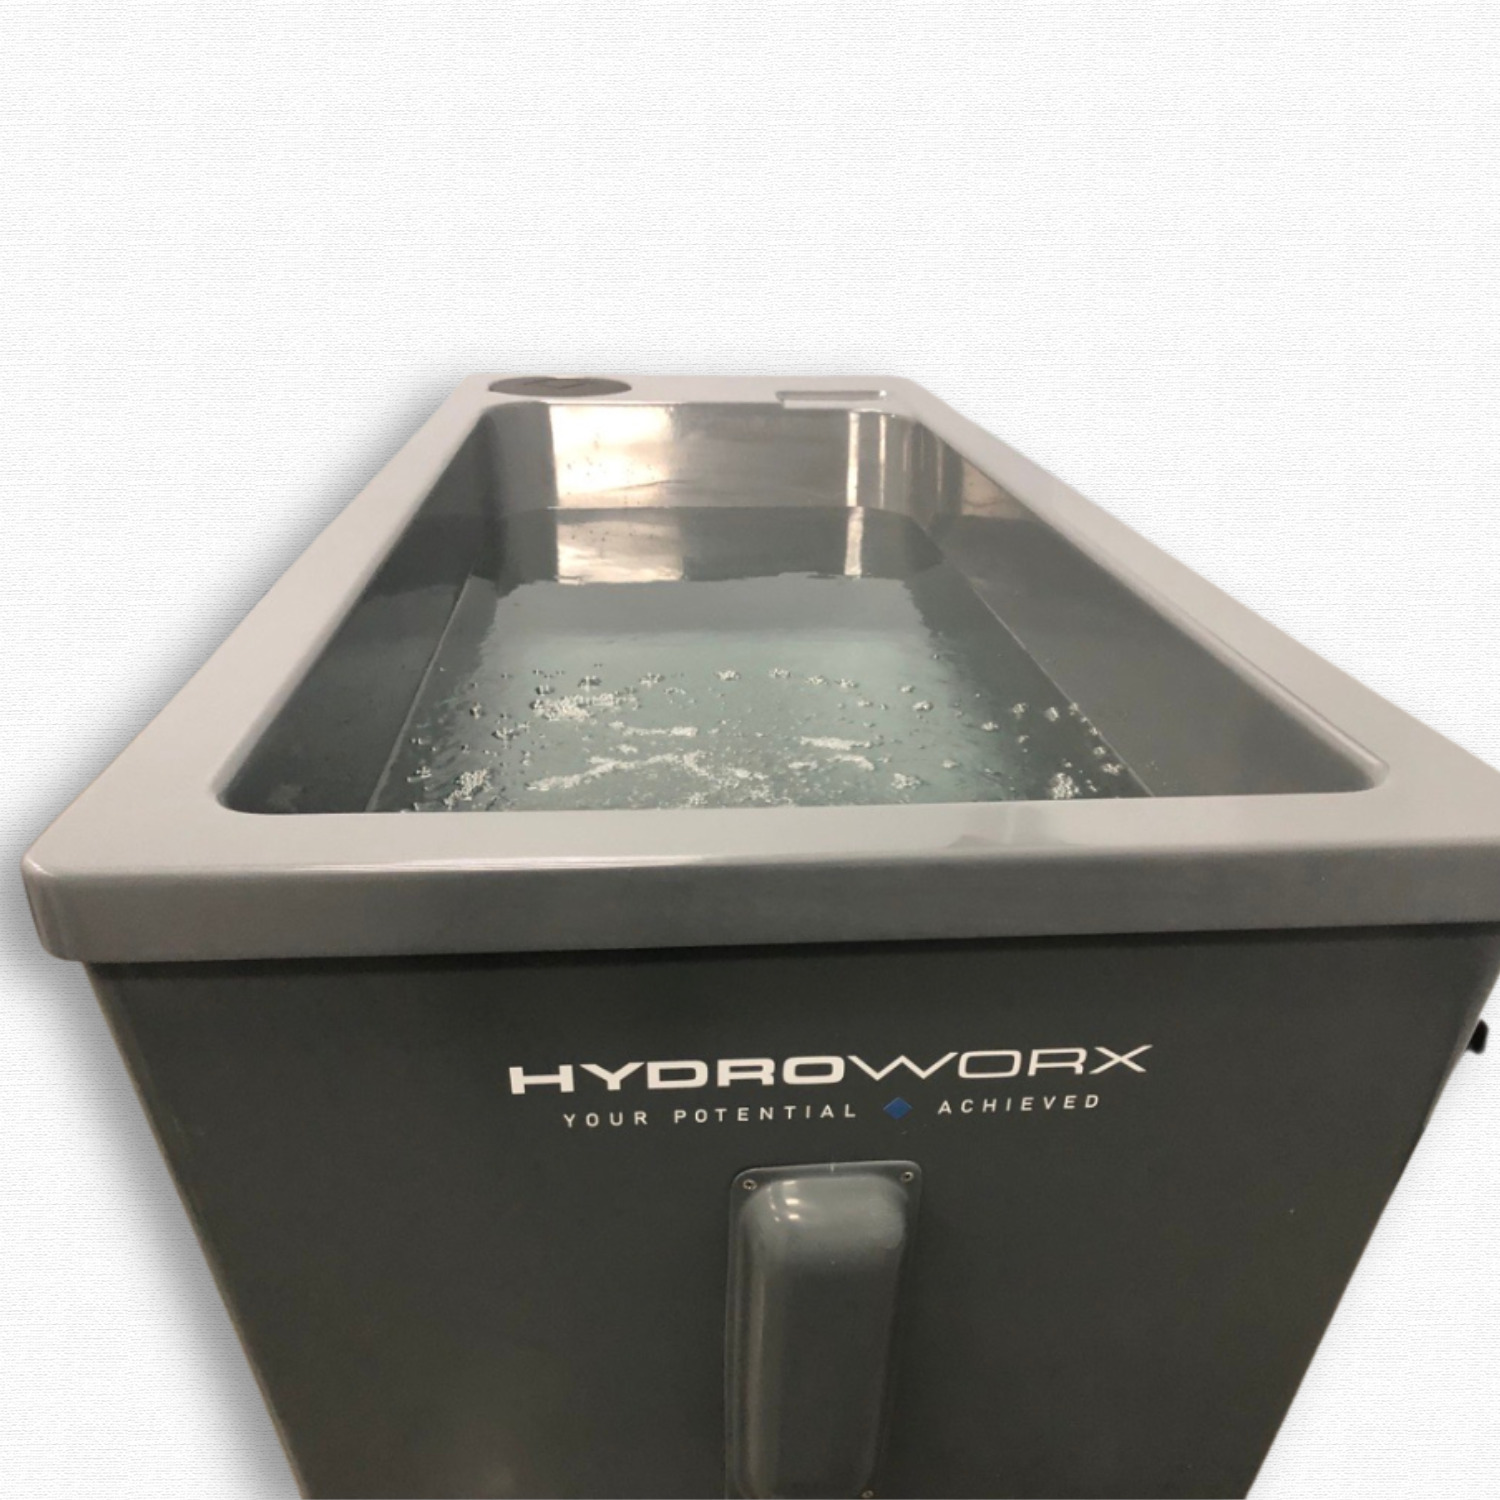 HydroWorx One